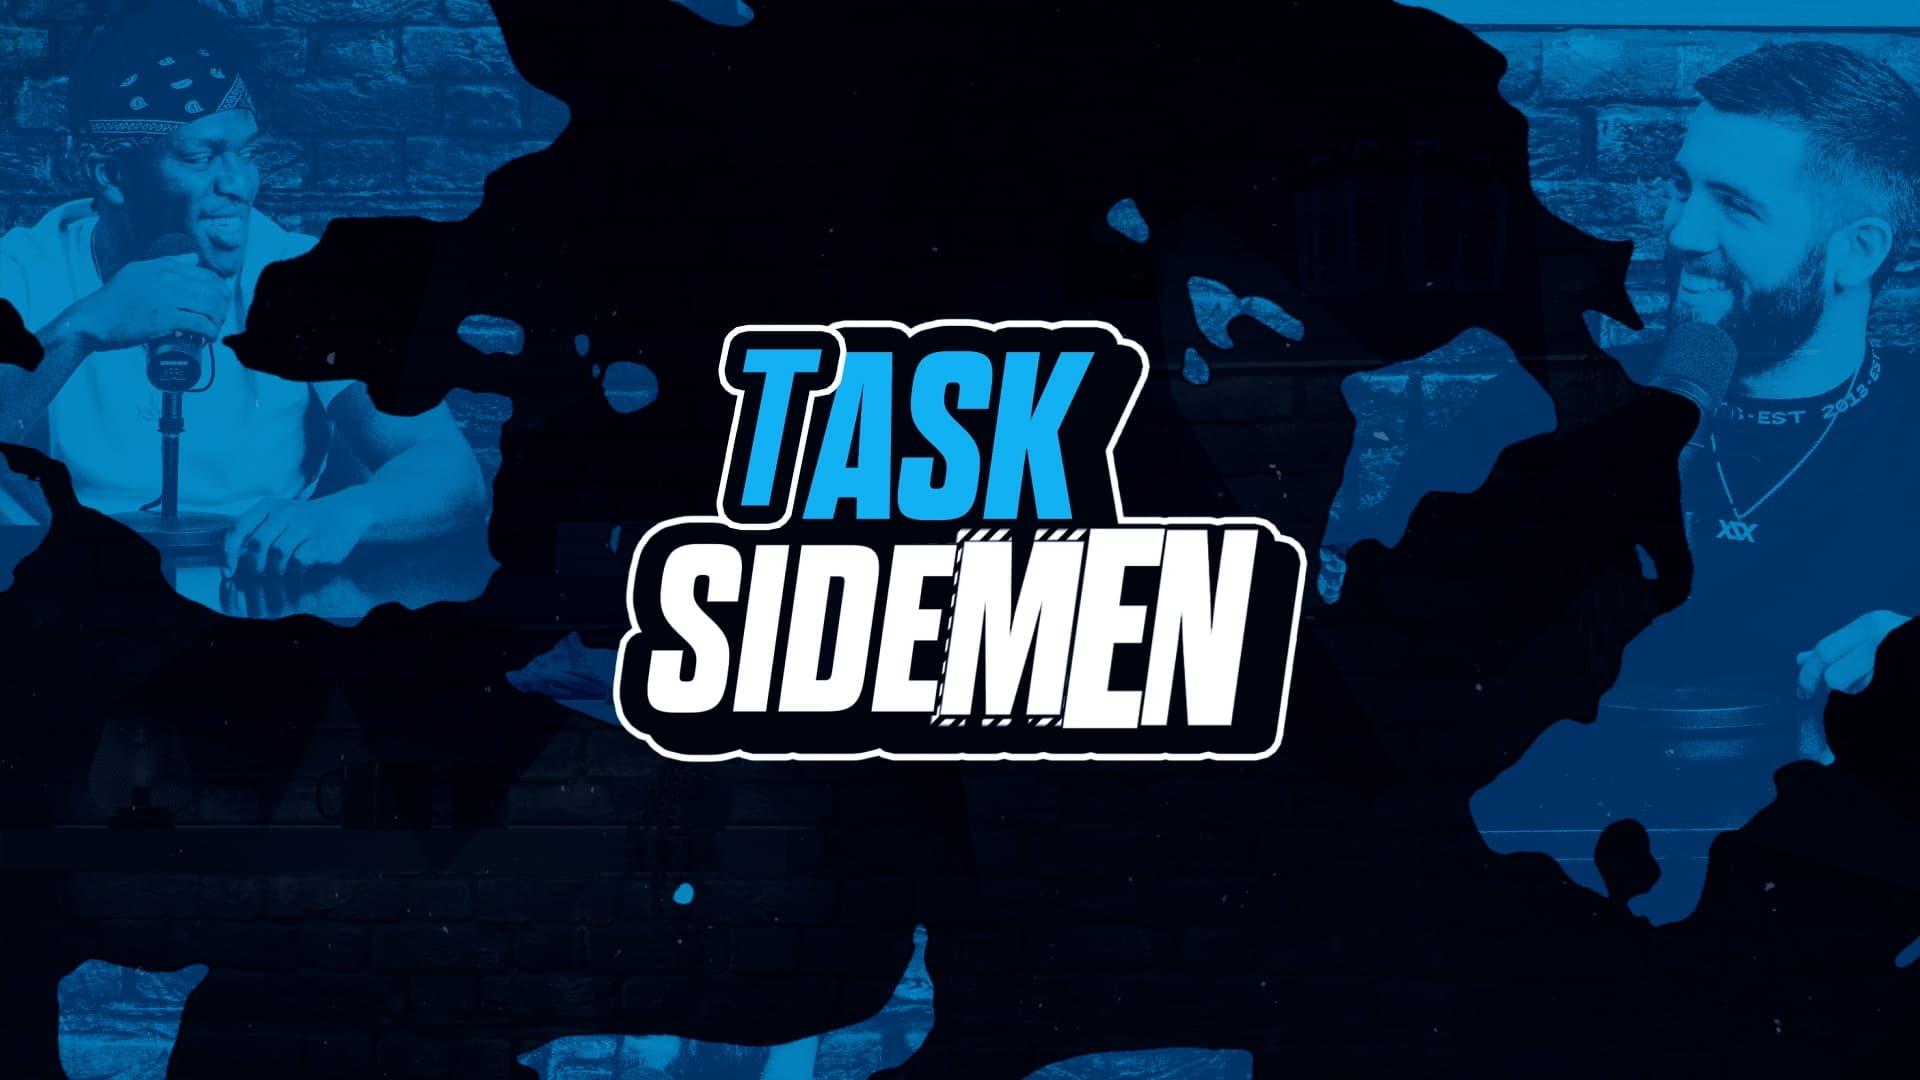 Task the Sidemen backdrop